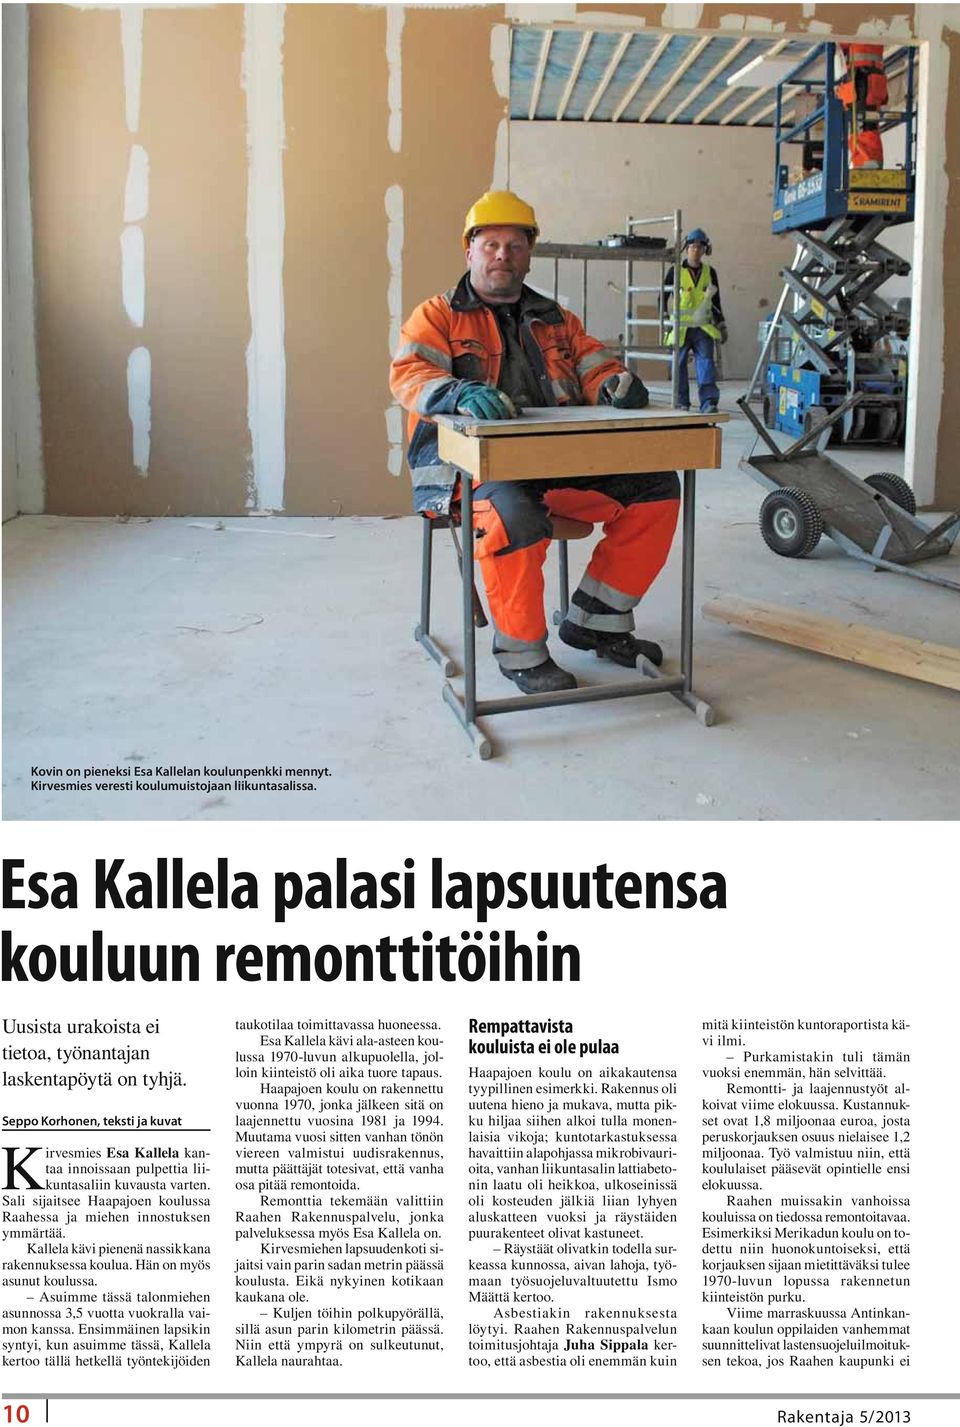 Seppo Korhonen, teksti ja kuvat Kirvesmies Esa Kallela kantaa innoissaan pulpettia liikuntasaliin kuvausta varten. Sali sijaitsee Haapajoen koulussa Raahessa ja miehen innostuksen ymmärtää.